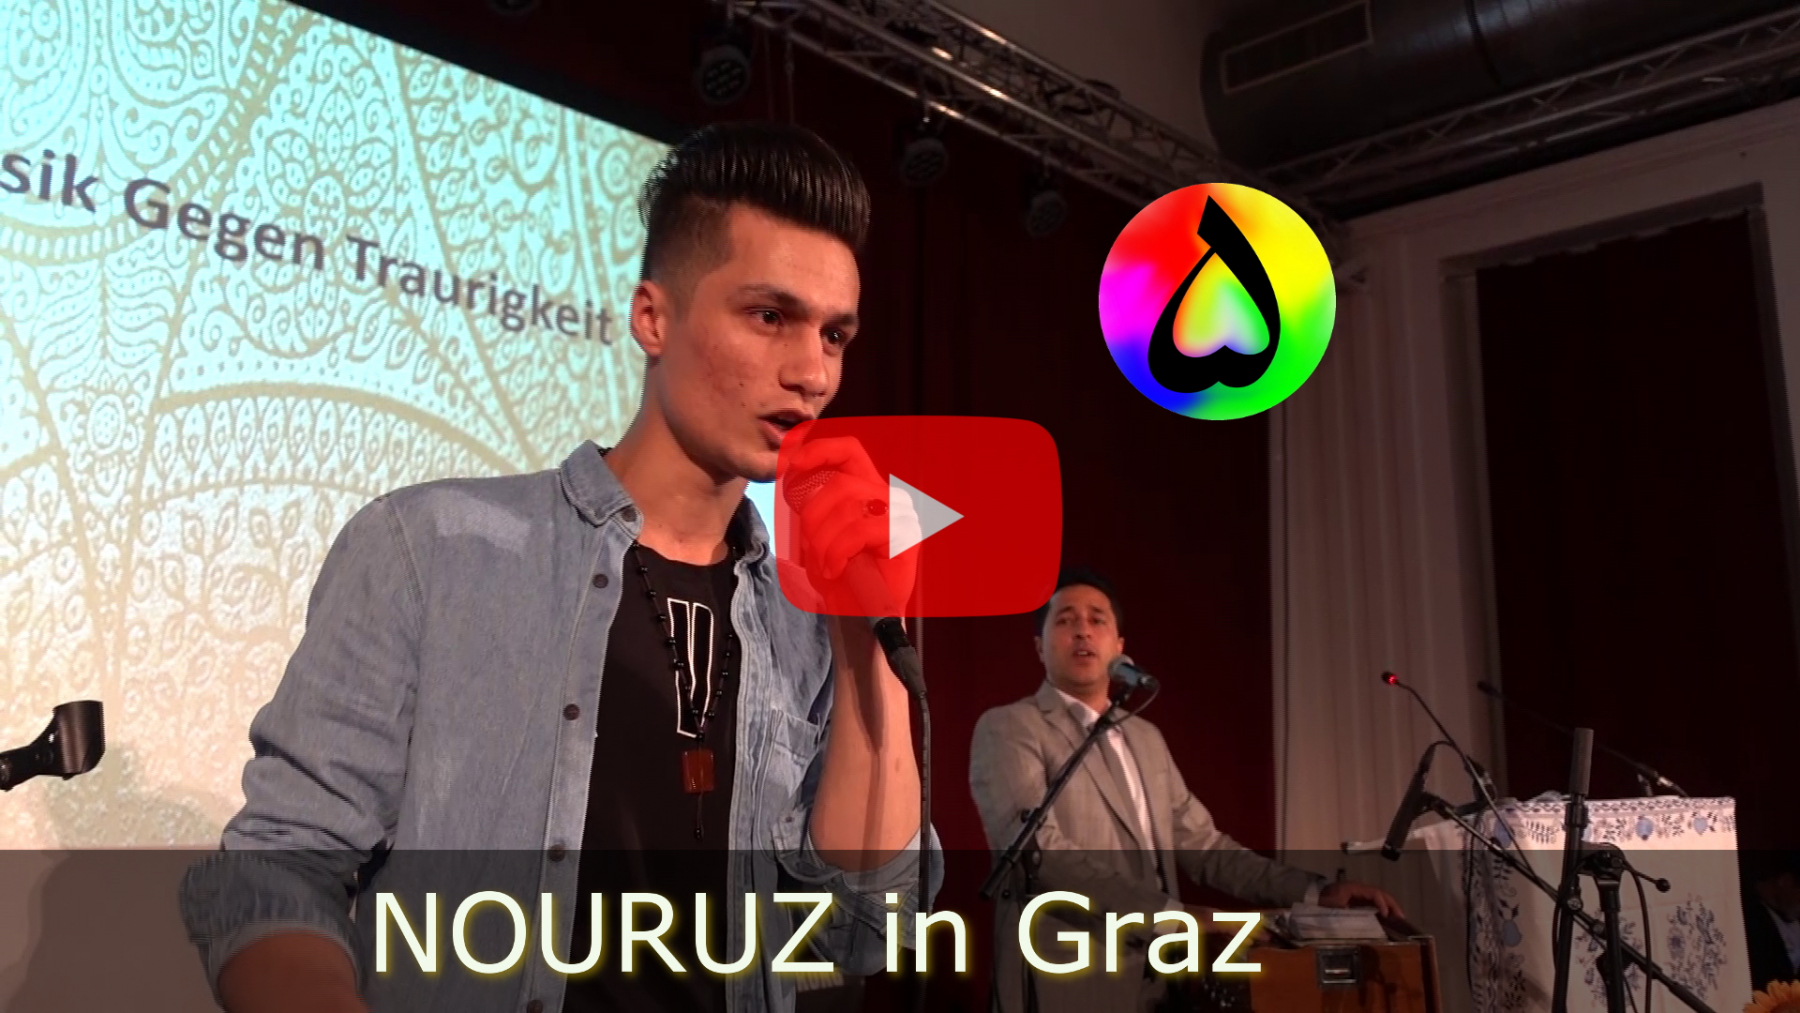 FIVESTONES-Nouruz-Fest-2019-MusikGegenTraurigkeit